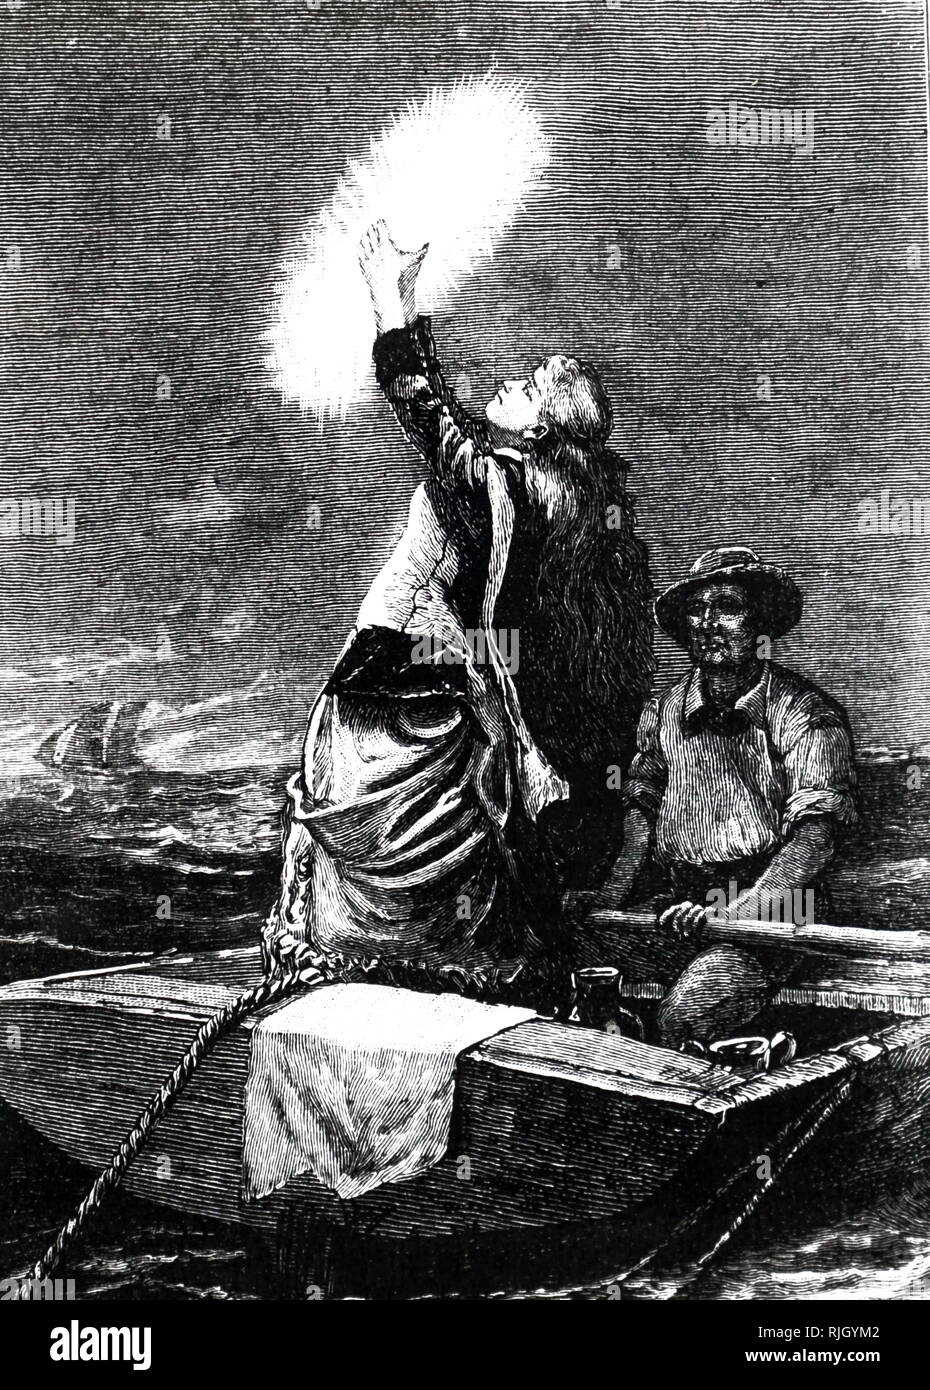 Ein kupferstich mit der Darstellung eines Schiffbrüchigen Frau mit einem riesigen pyrosome - Pyrasoma giganteum - eine höchst phosphoreszierende zusammengesetzten Organismus, ein Schiff zu signalisieren. Vom 19. Jahrhundert Stockfoto